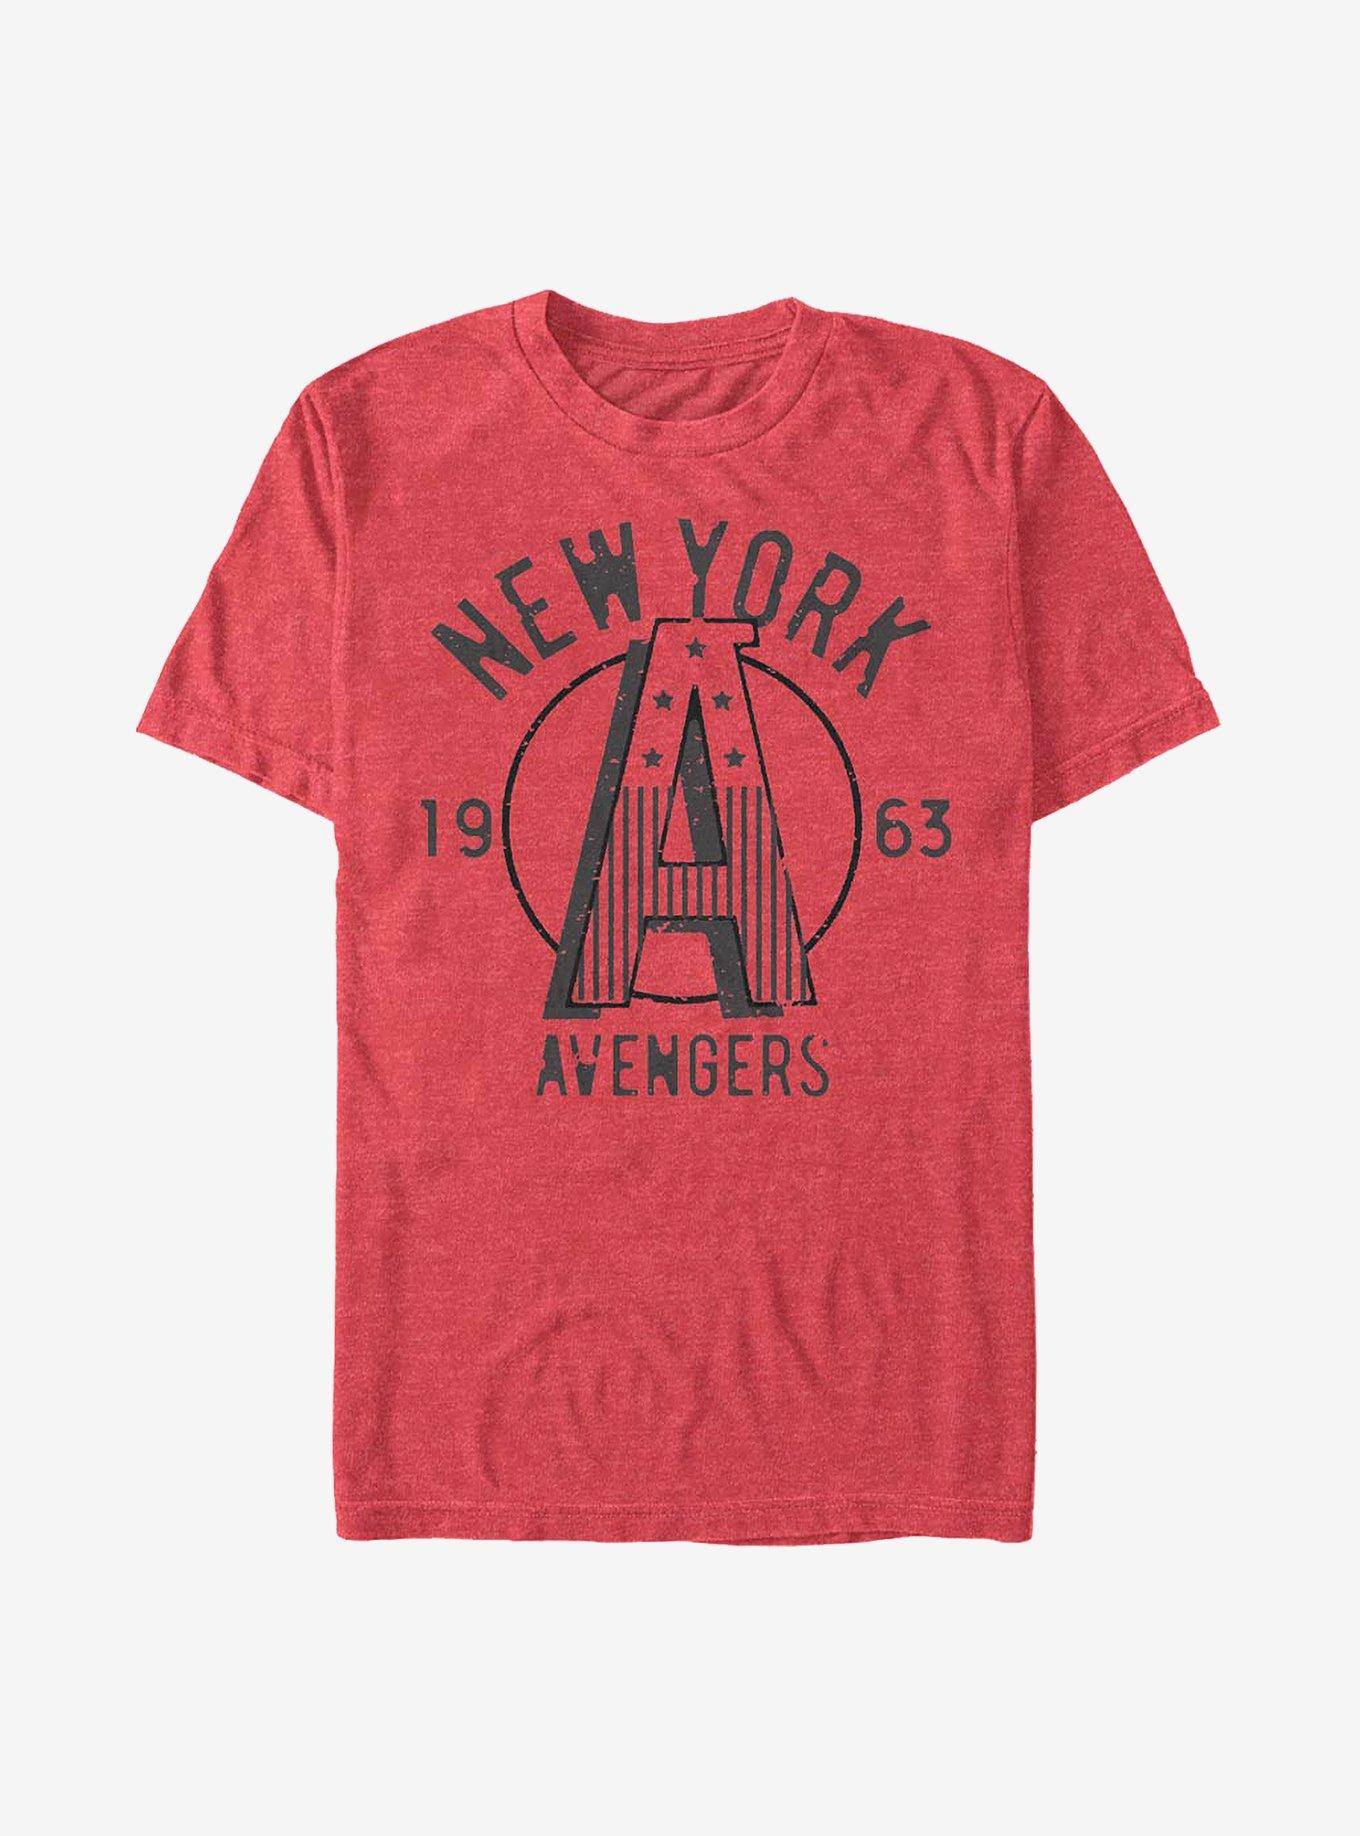 Marvel Avengers New York T-Shirt, RED HTR, hi-res